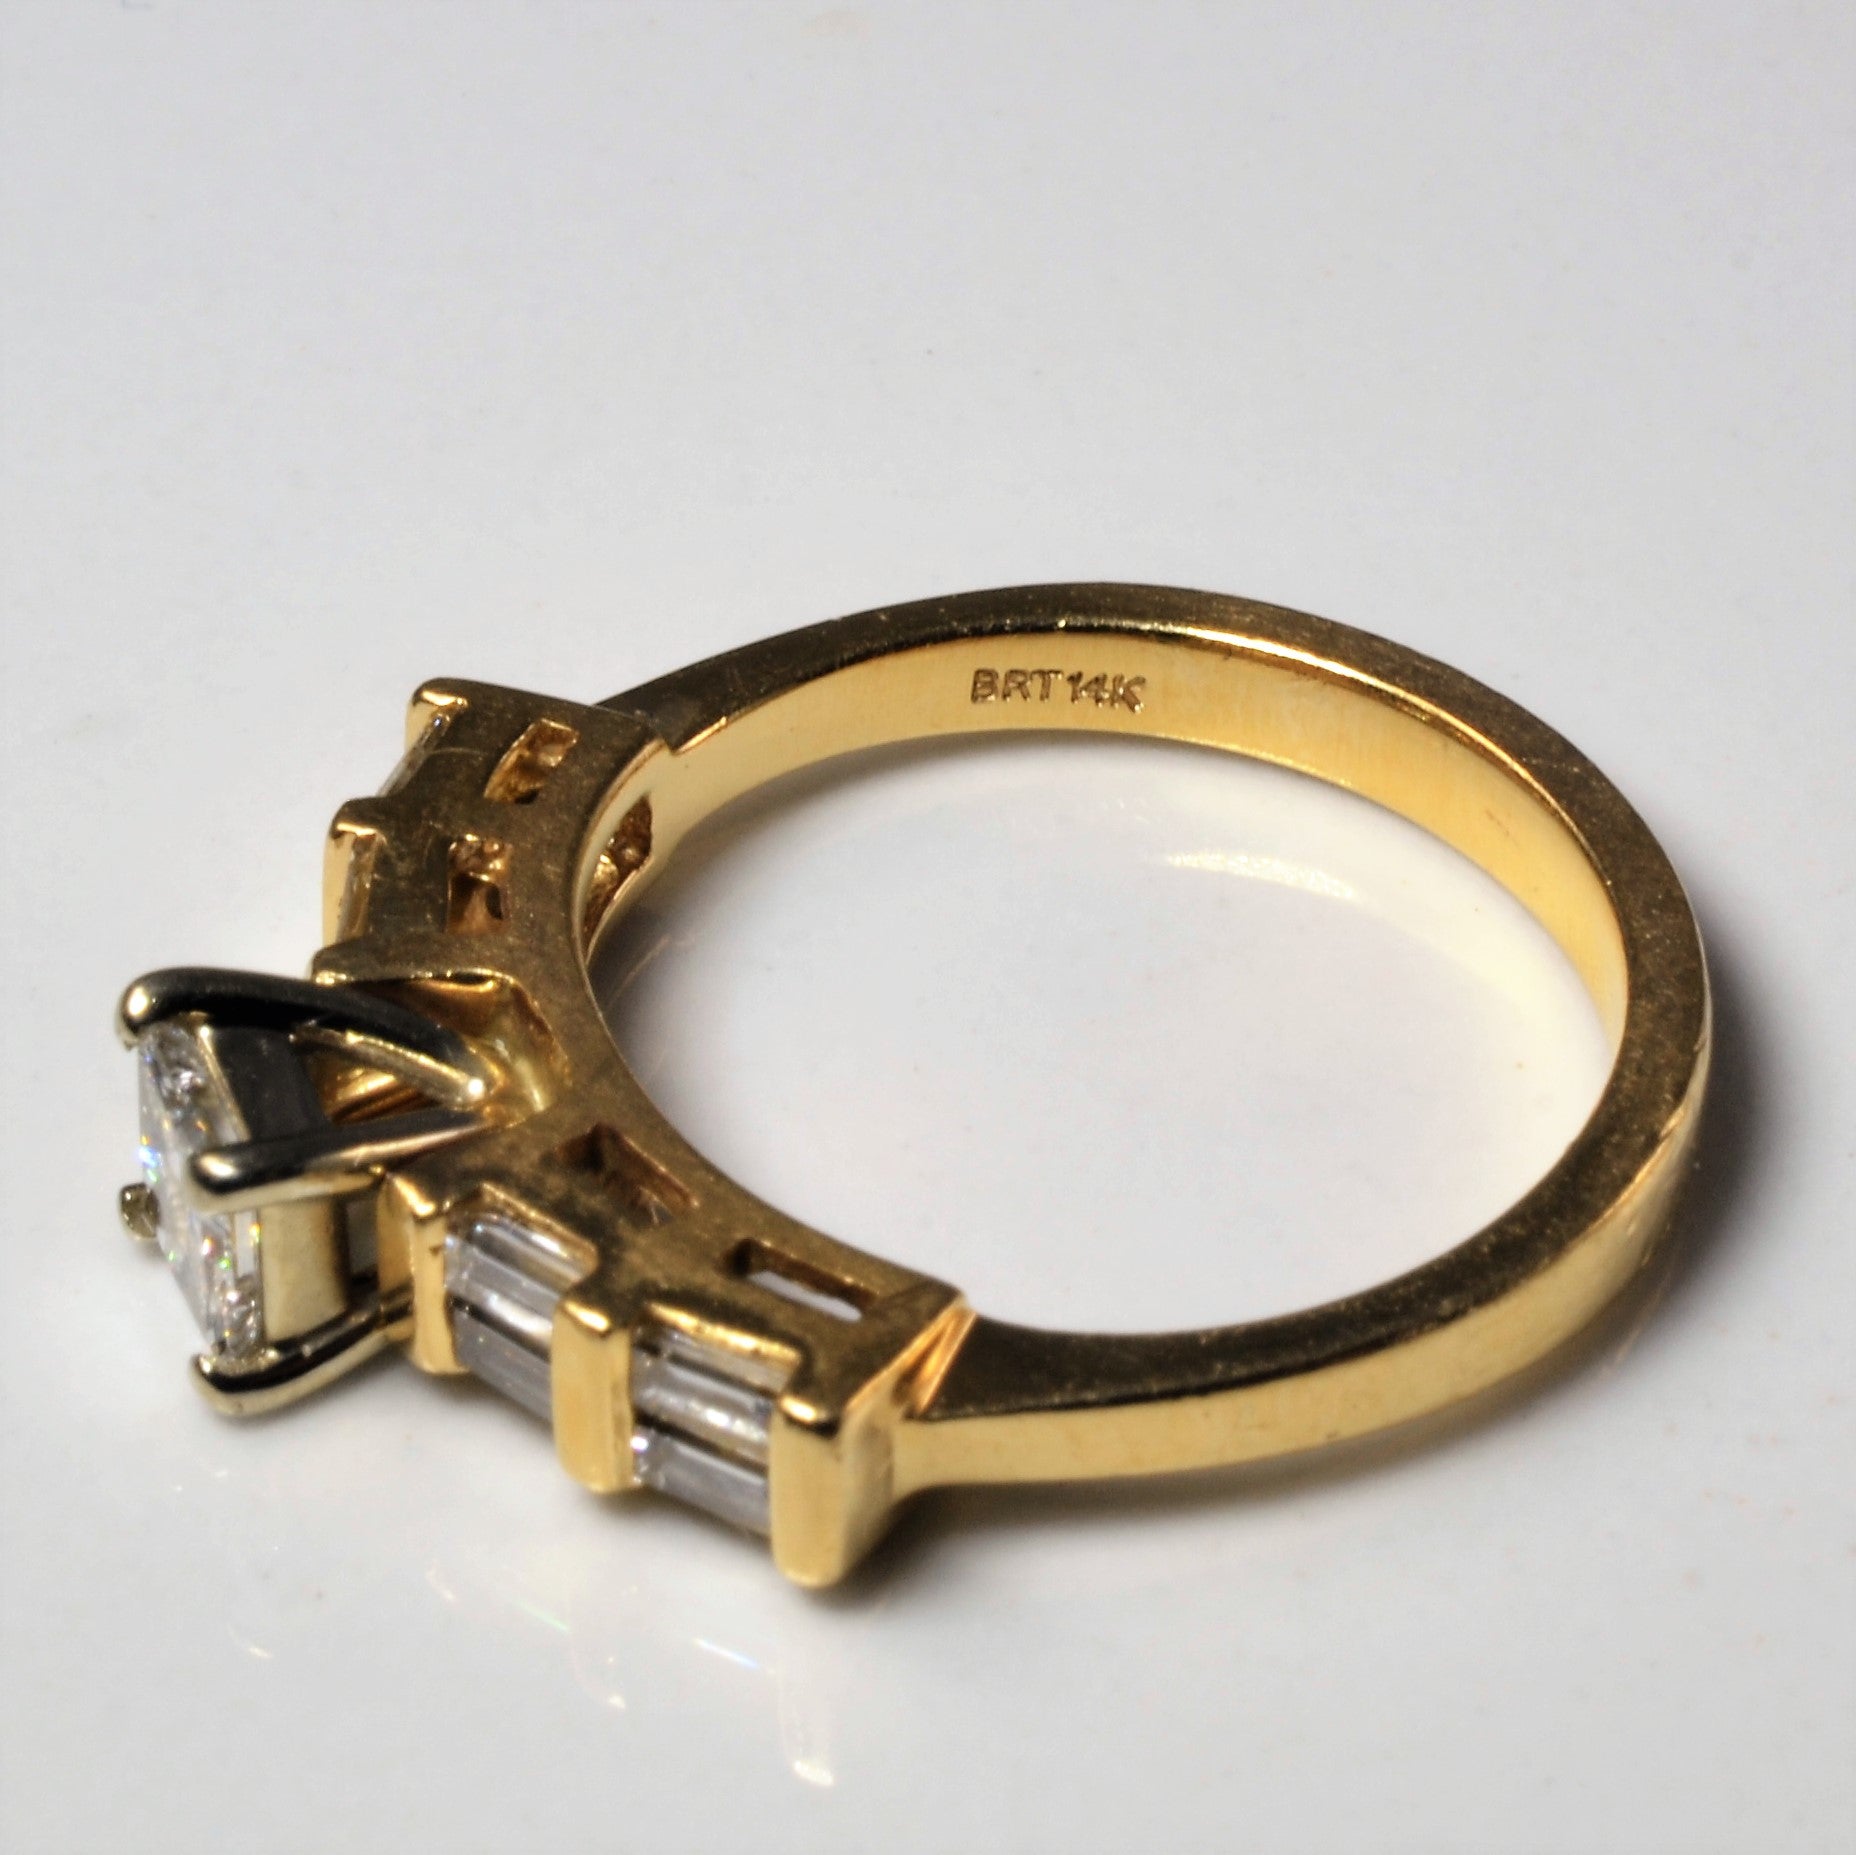 Princess & Baguette Diamond Engagement Ring | 0.68ctw | SZ 5.5 |